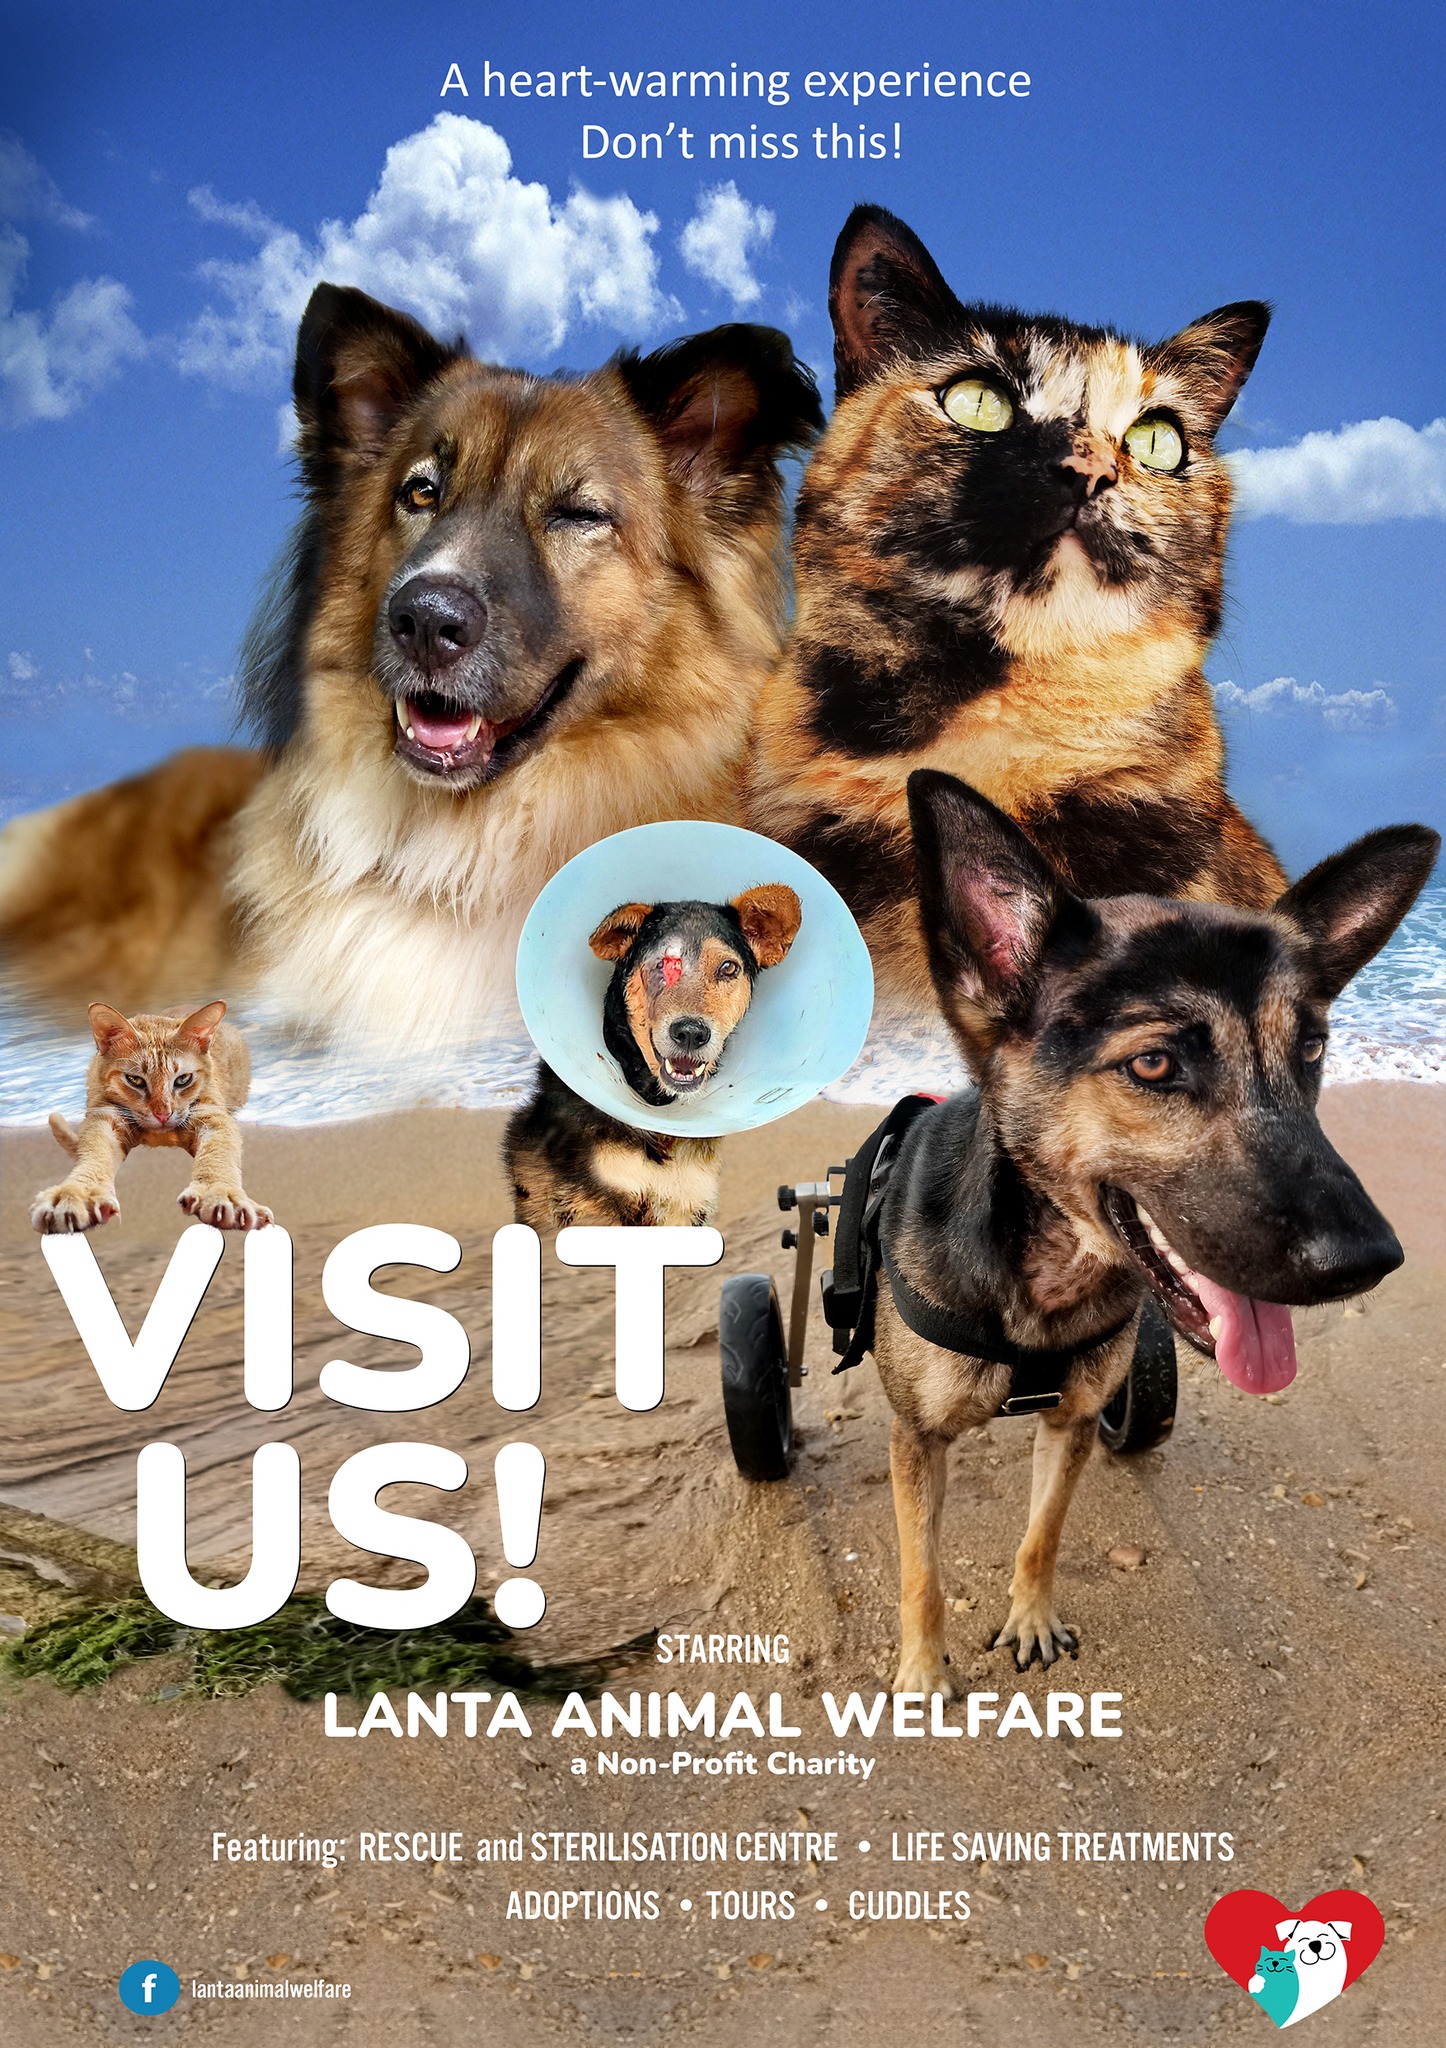 Lanta Animal Welfare (@lantaanimal) / Twitter